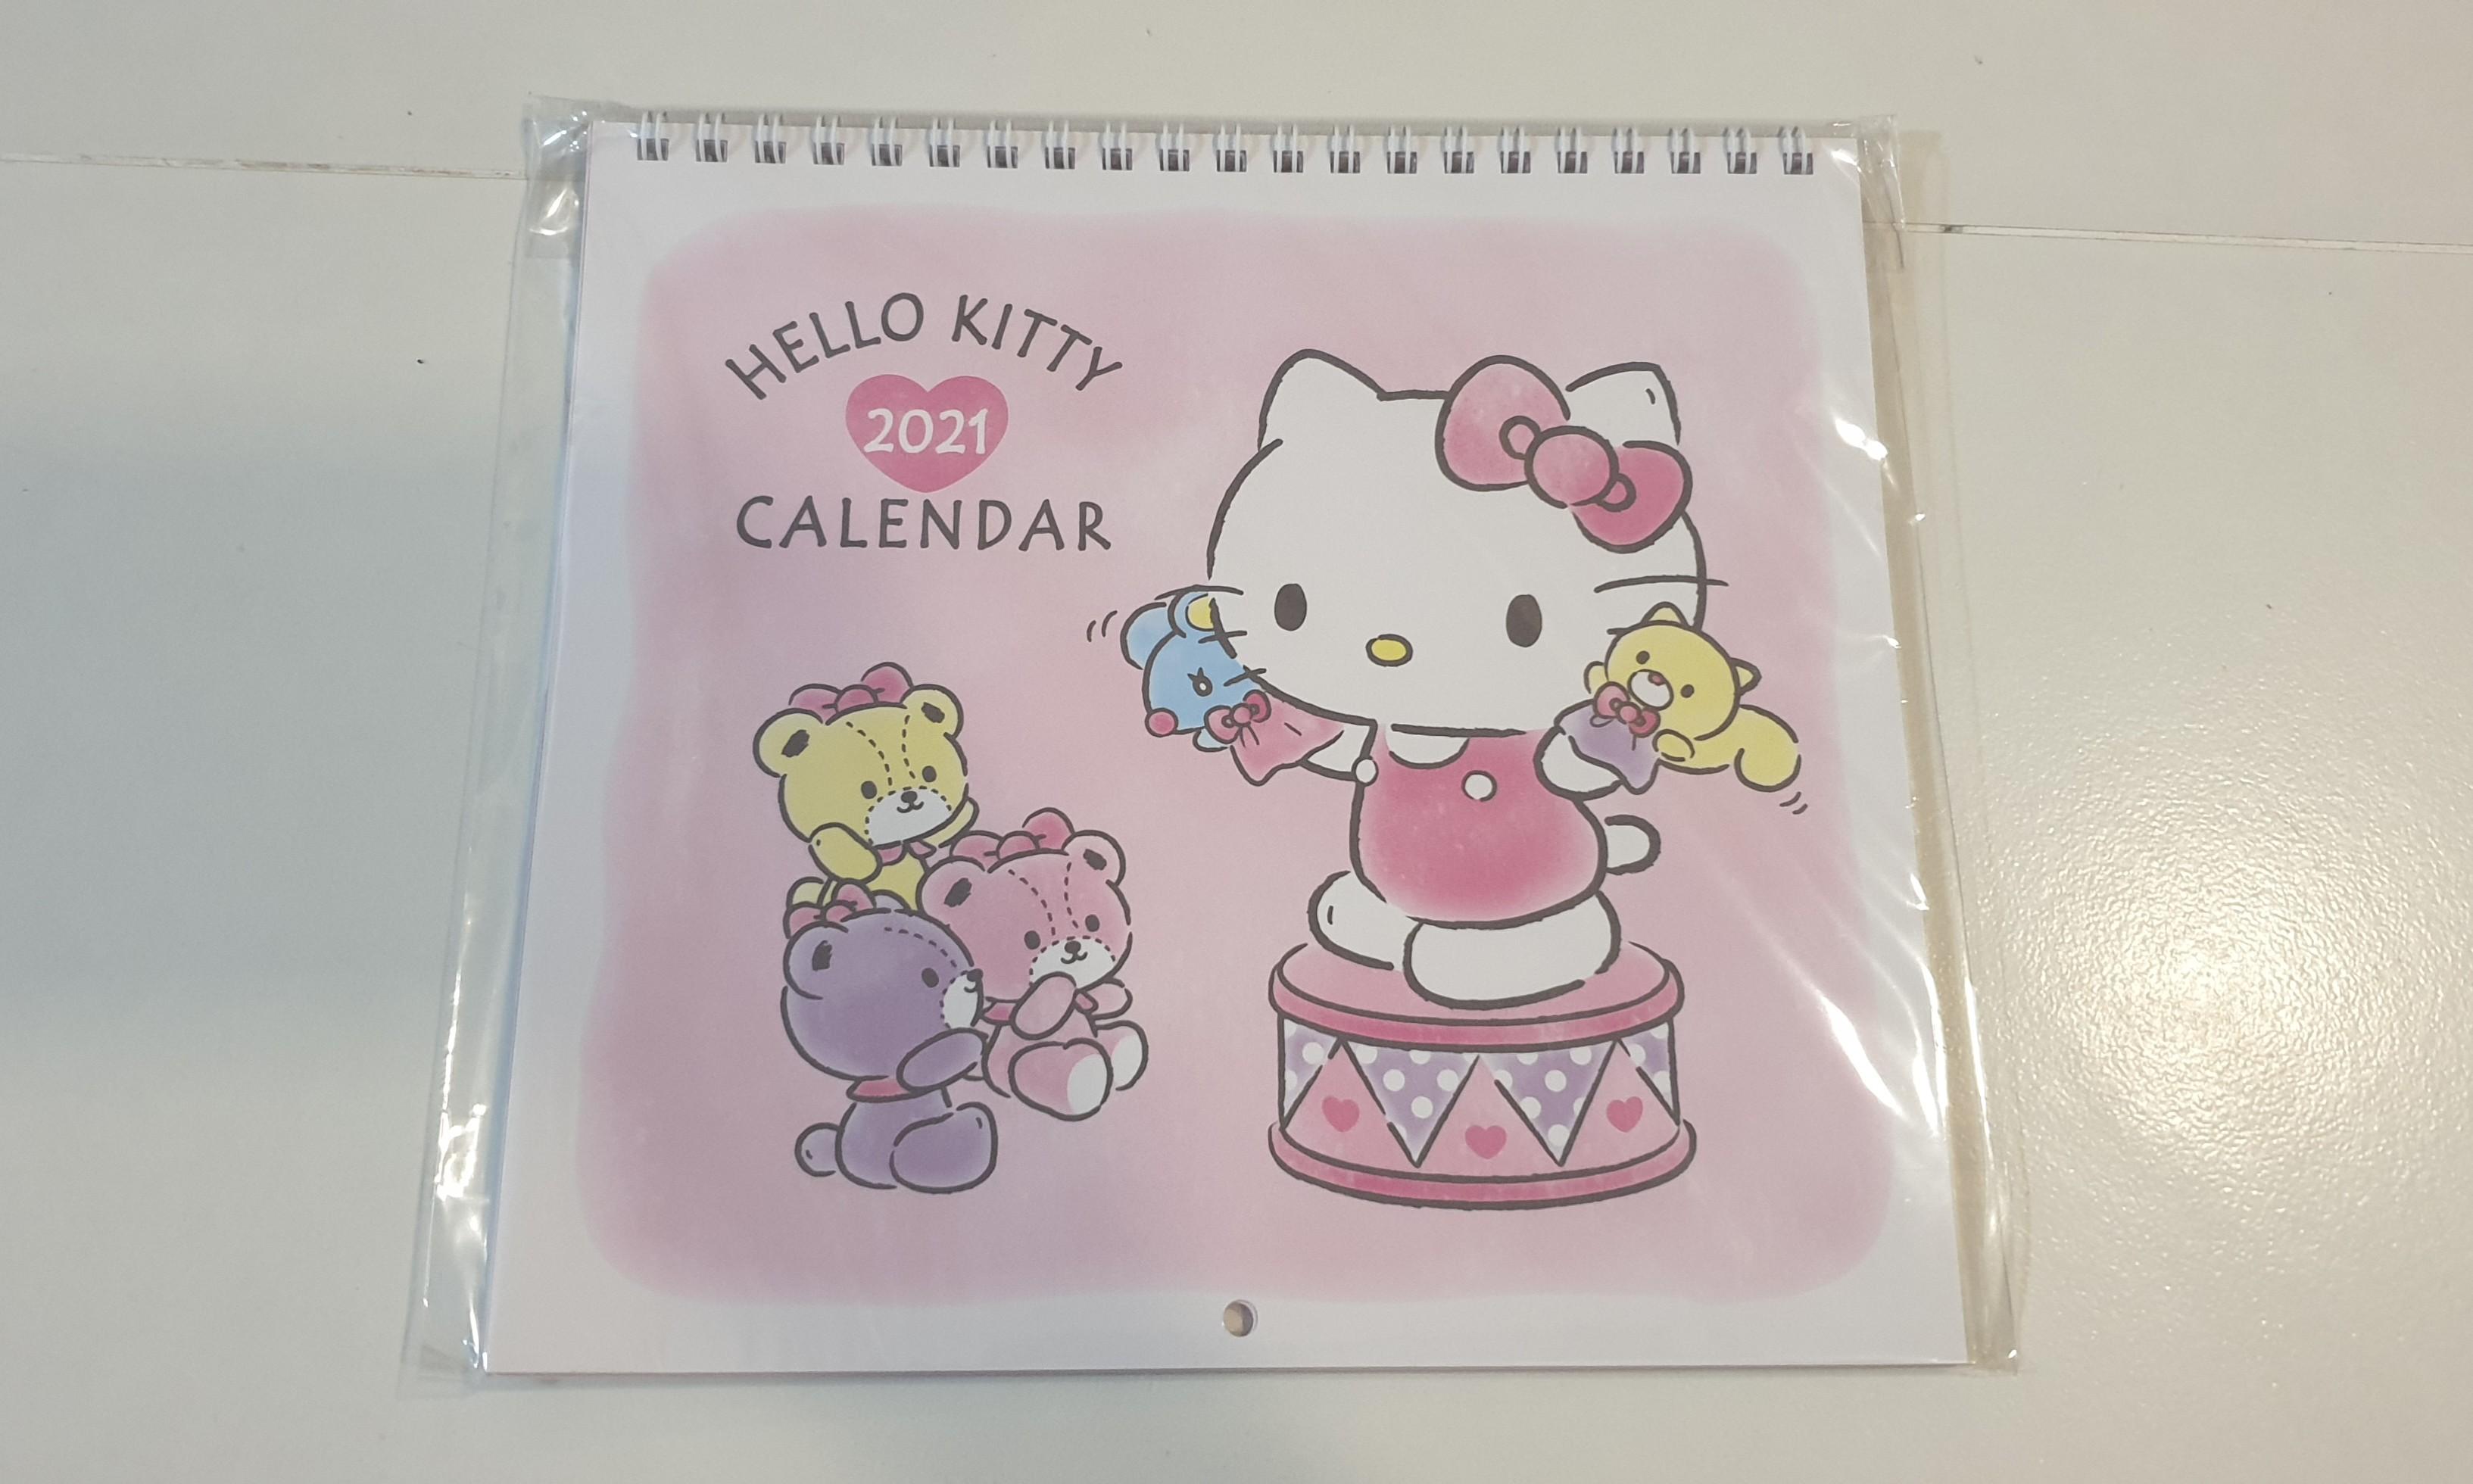 Download Printable Calendar 2021 Hello Kitty Gif